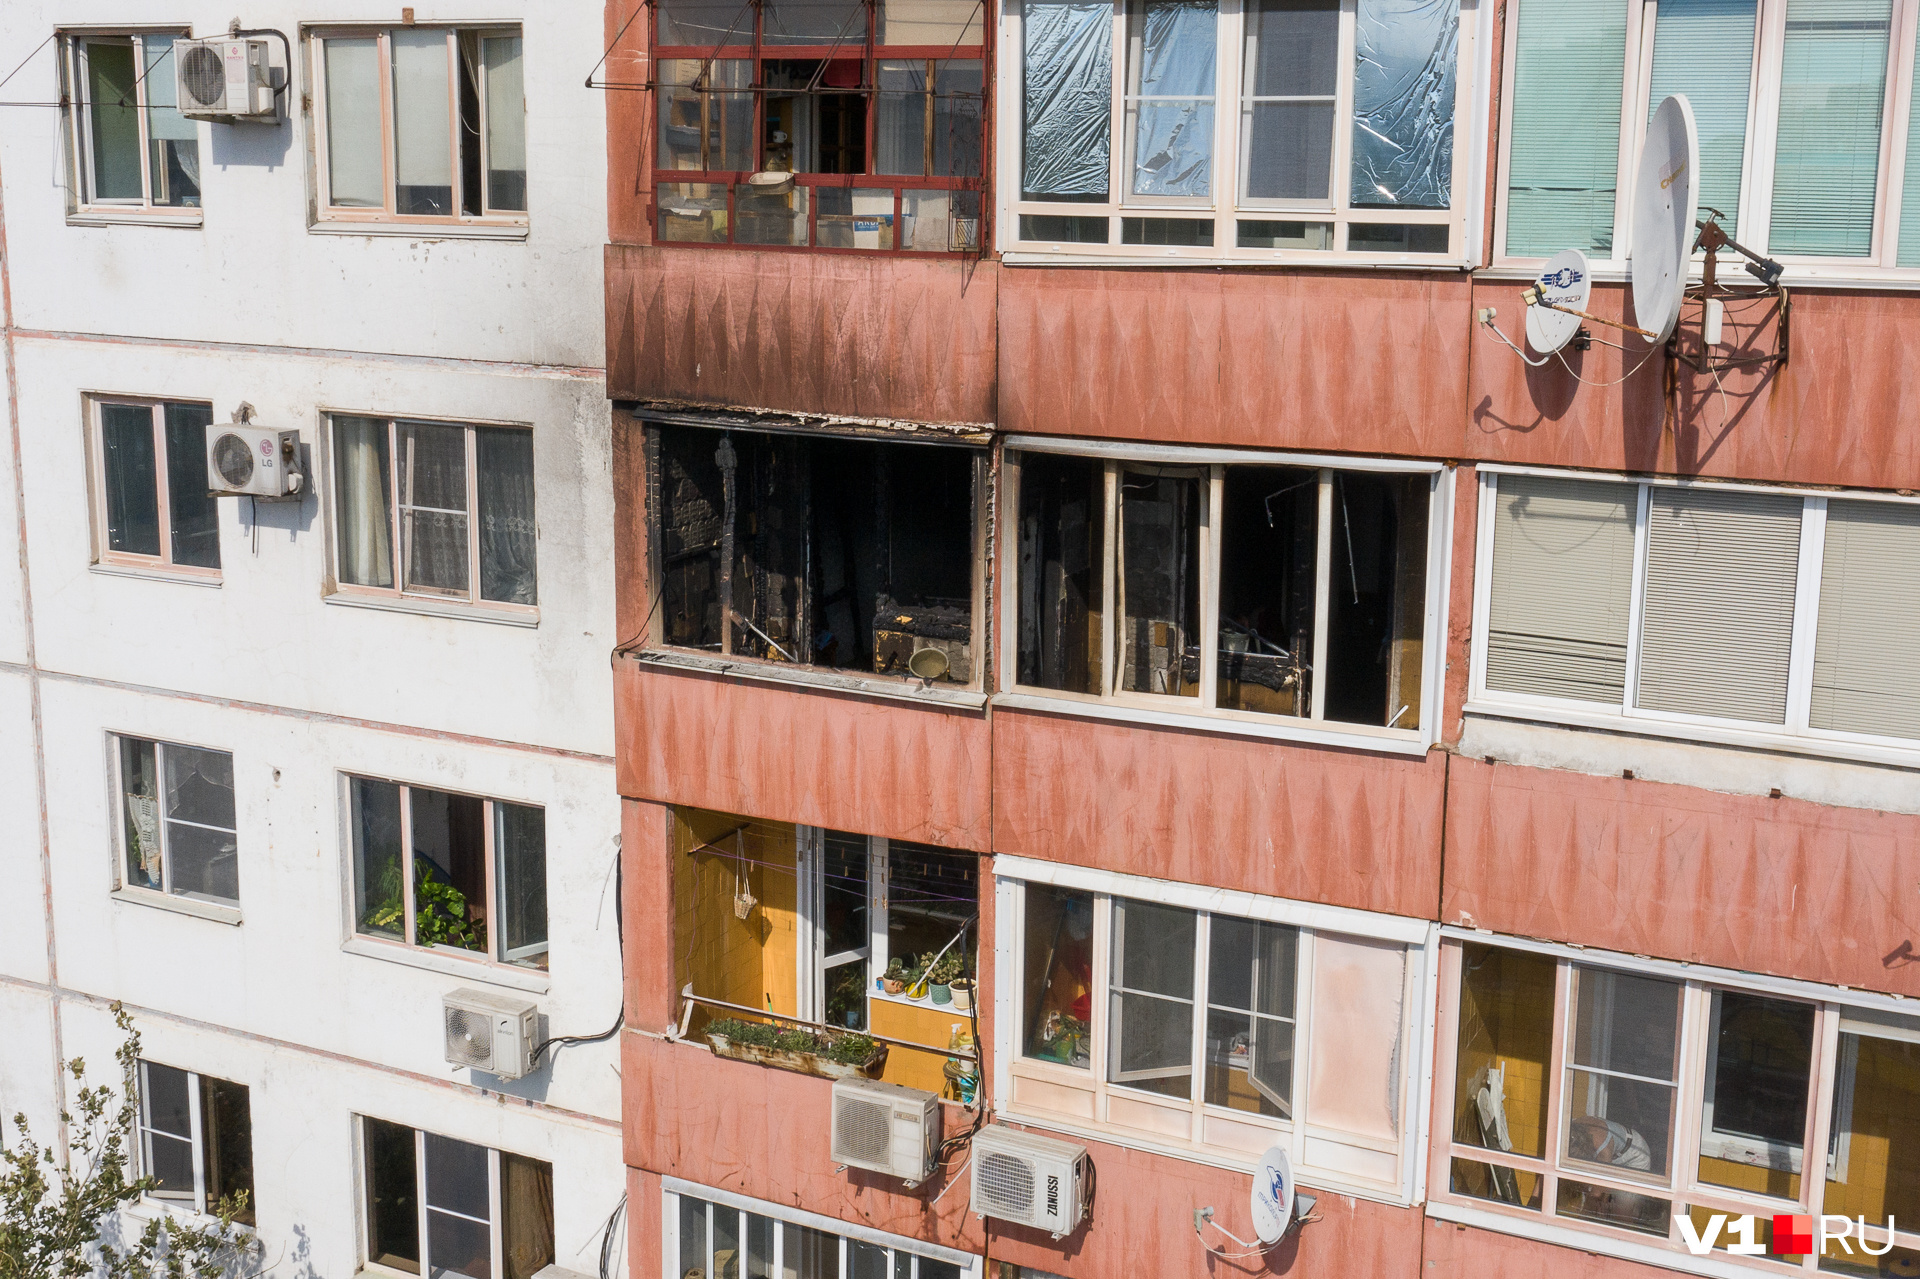 Огонь с горящего рынка перебросился на квартиры соседнего дома